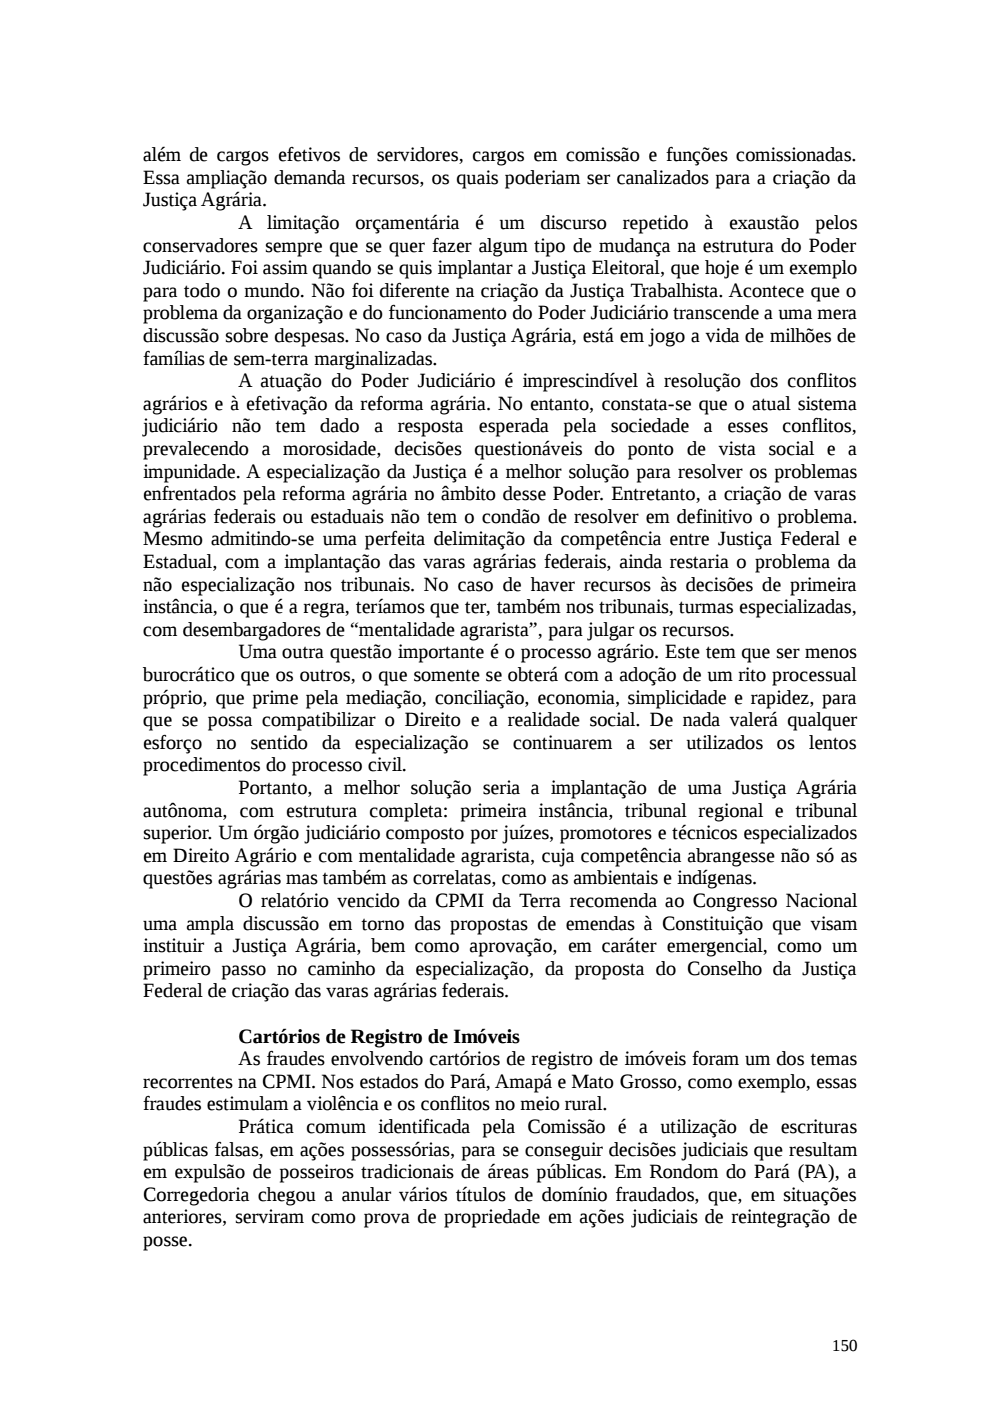 Page 150 from Relatório final da comissão